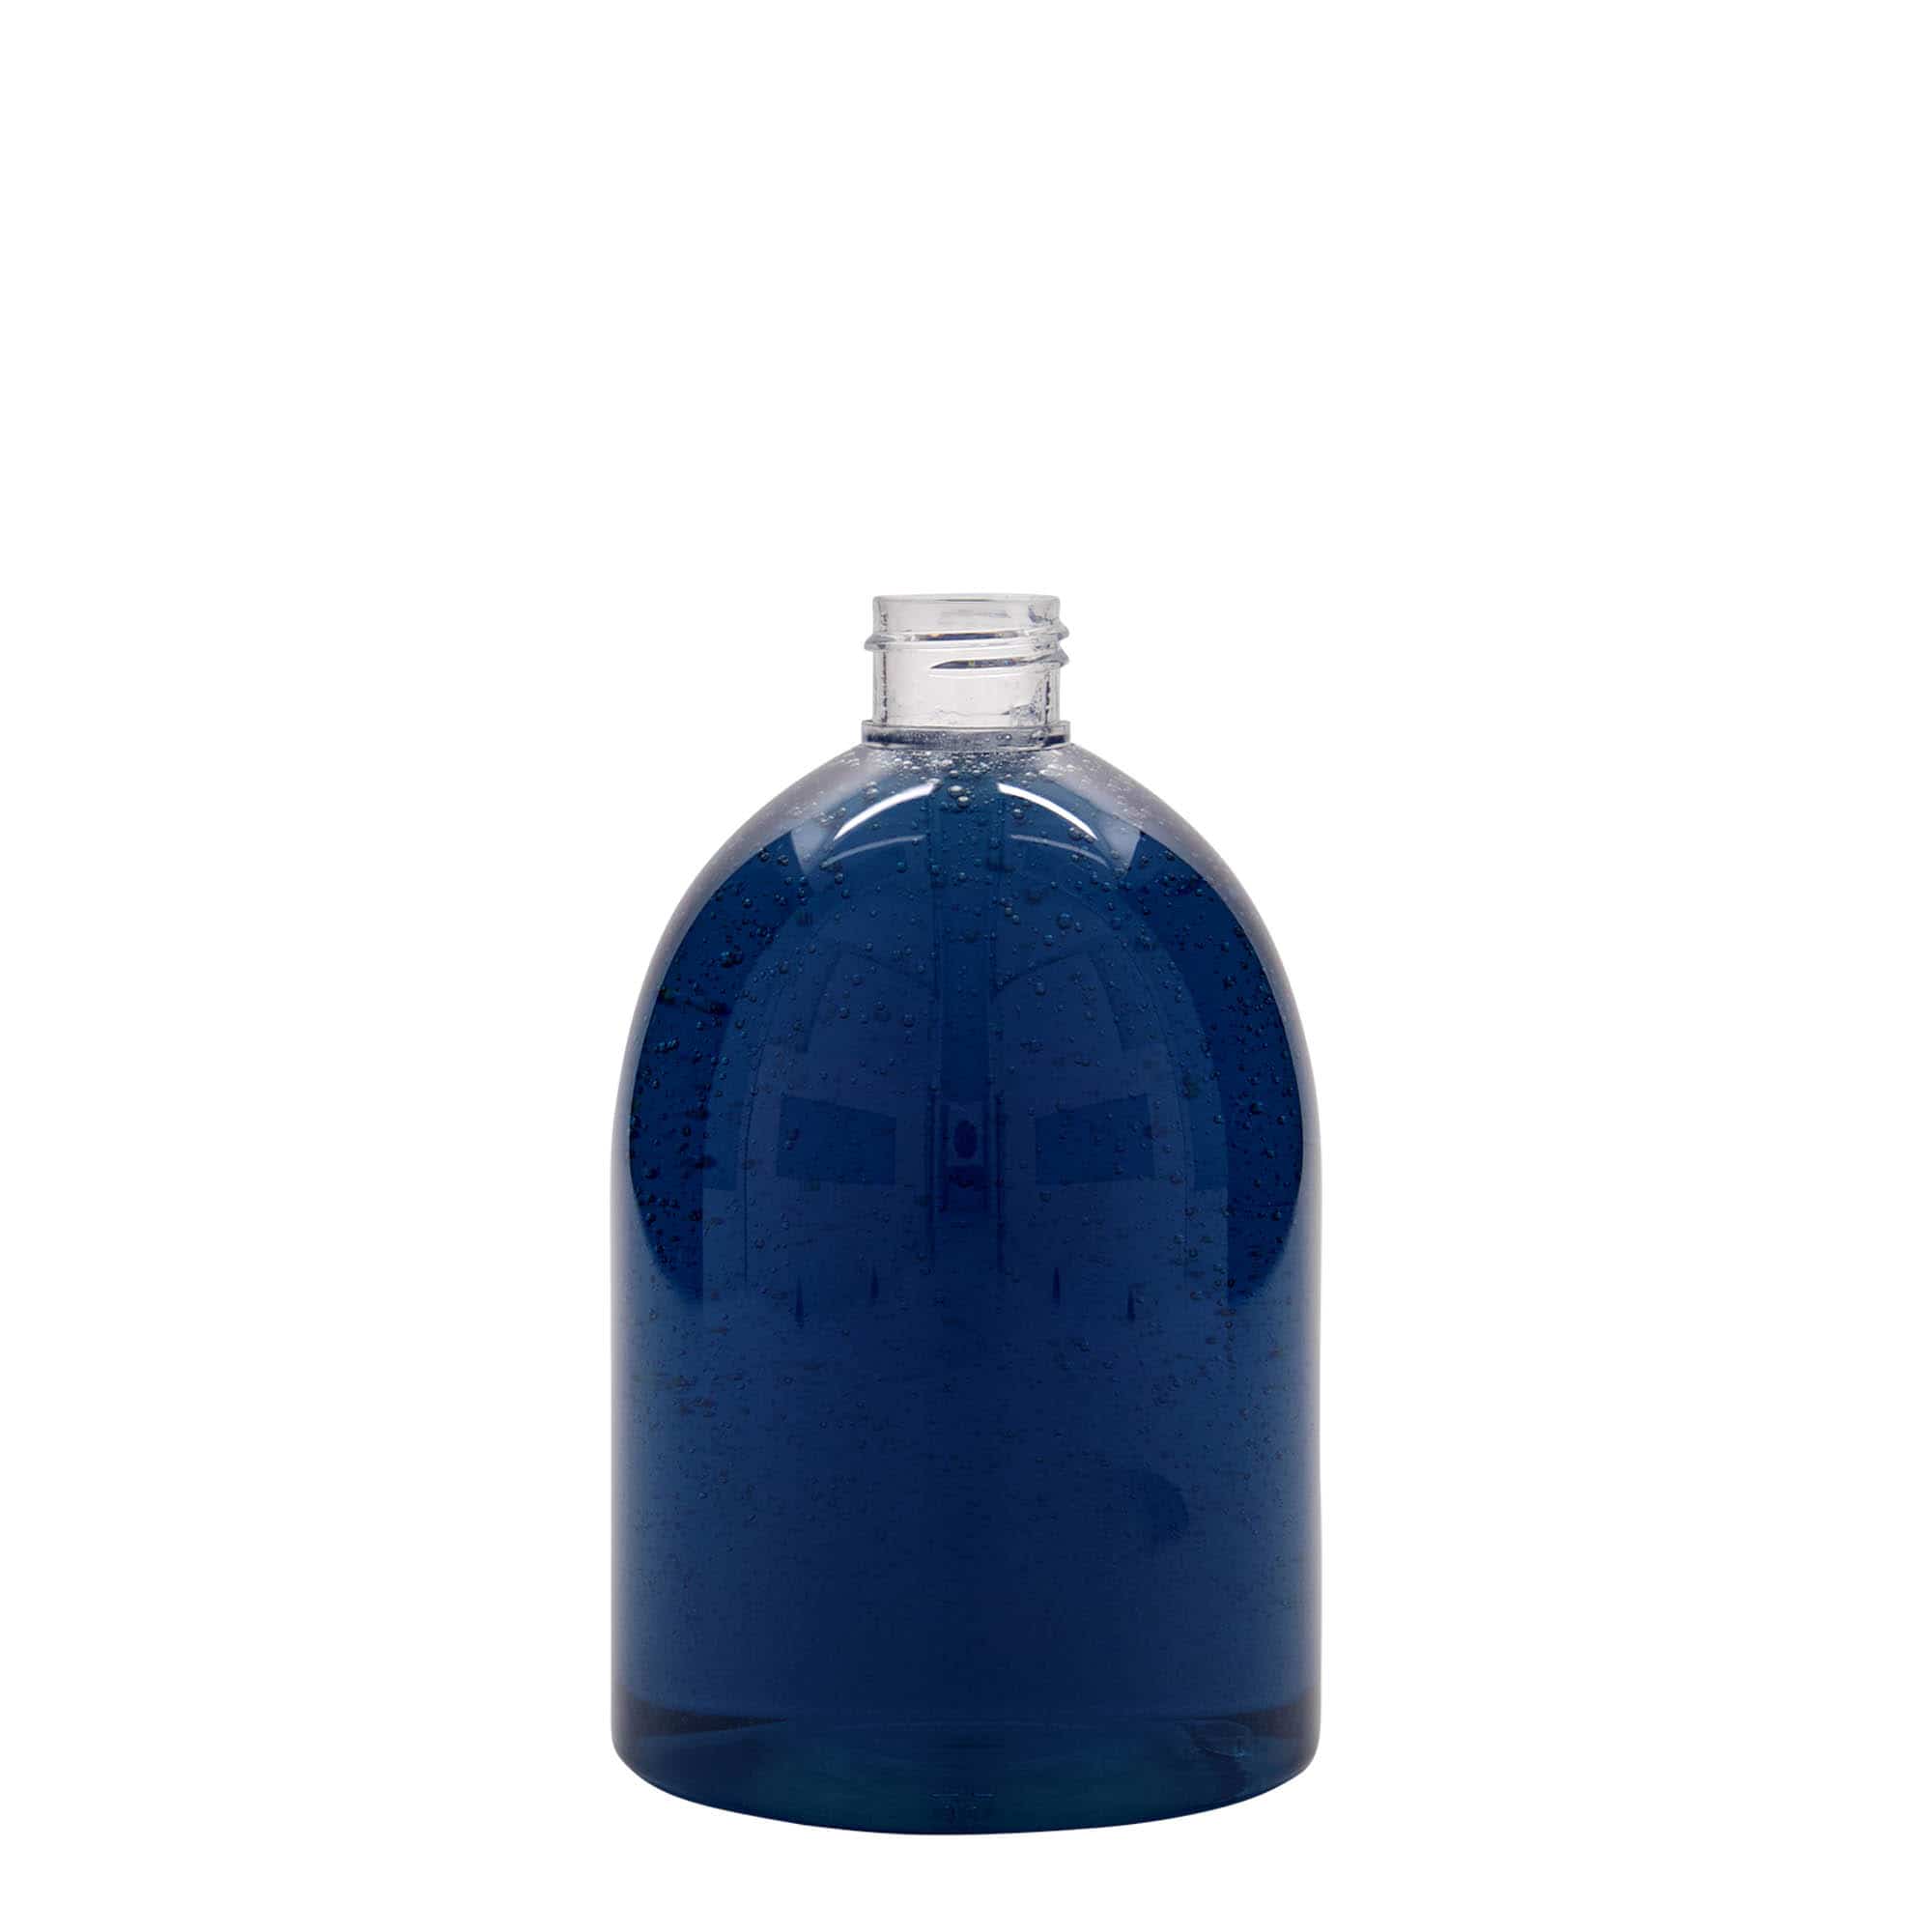 PET lahev 500 ml 'Alexa', plast, ústí: GPI 24/410